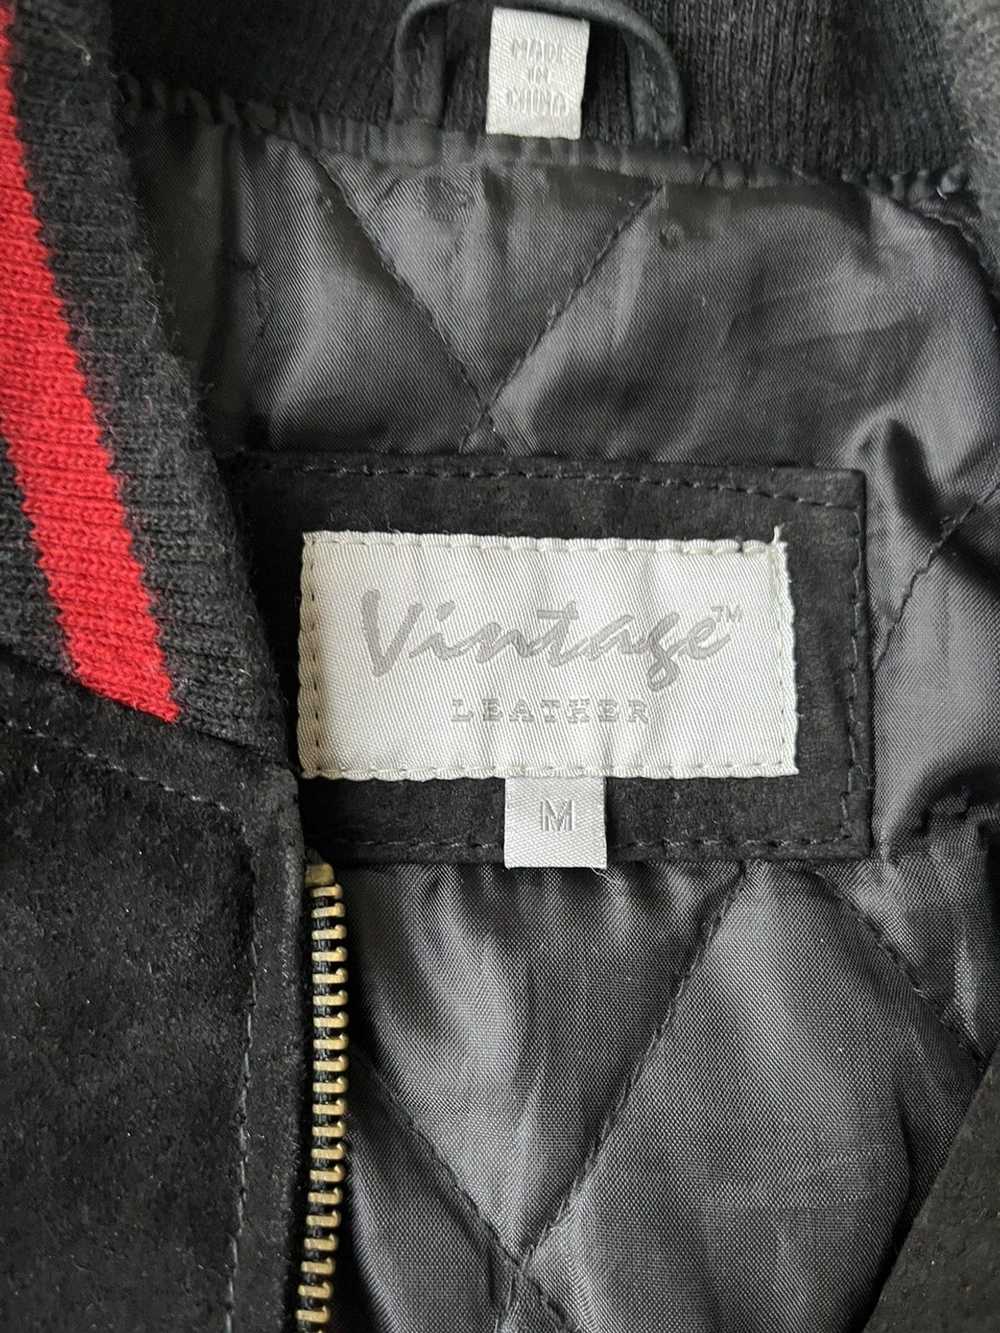 Military × Vintage Marines Leather Jacket - image 3